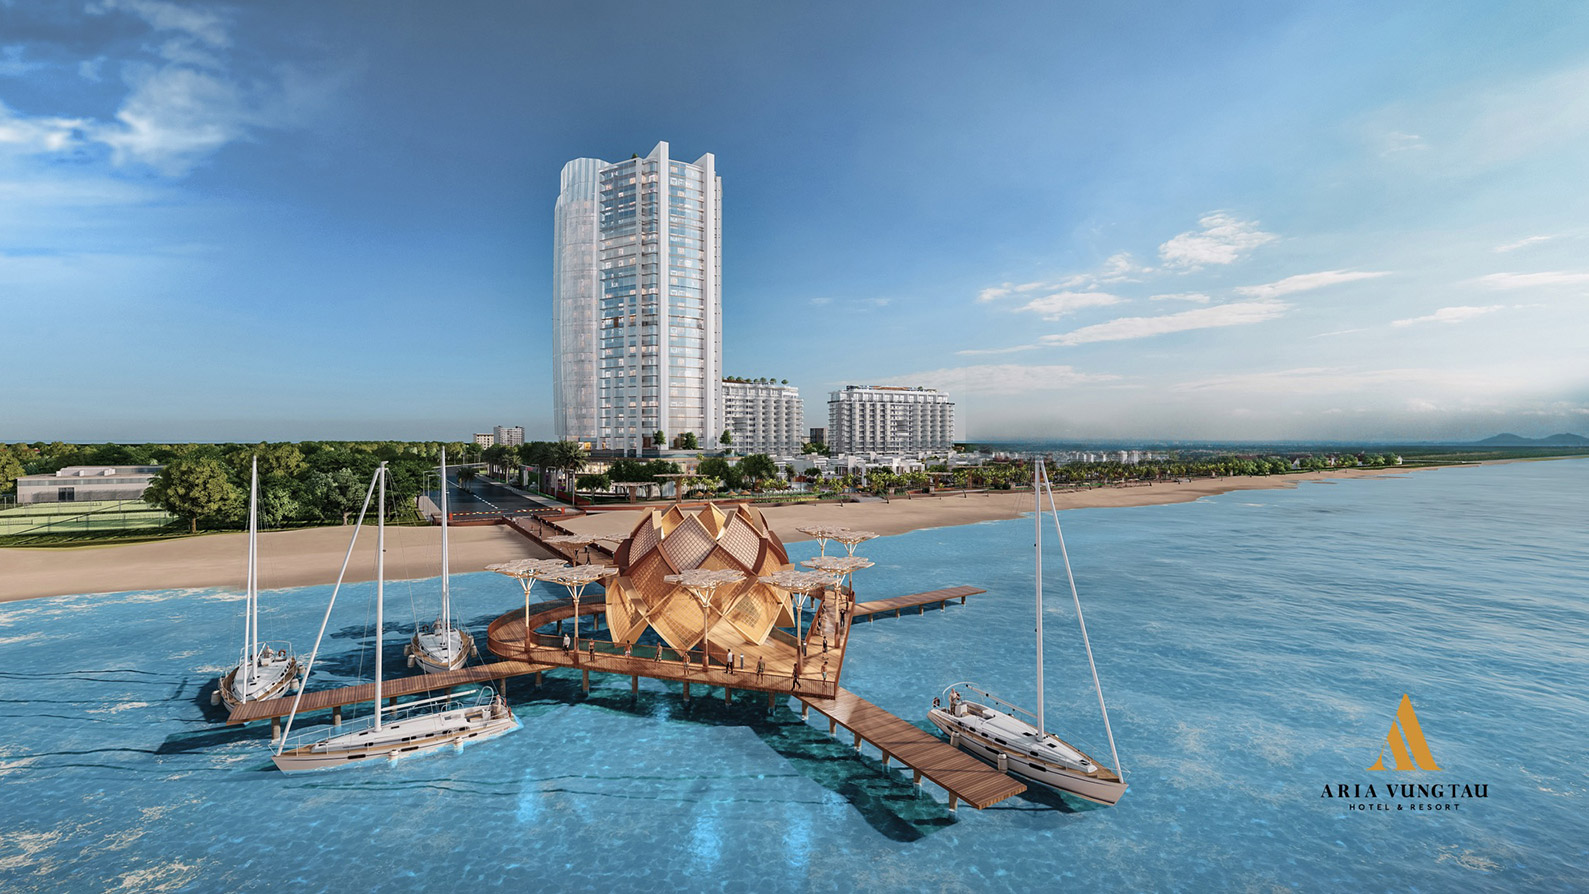 Aria Vũng Tàu Hotel & Resort - Tập Đoàn Danh Khôi | Nhà phát triển bất động  sản chất lượng và hiệu quả